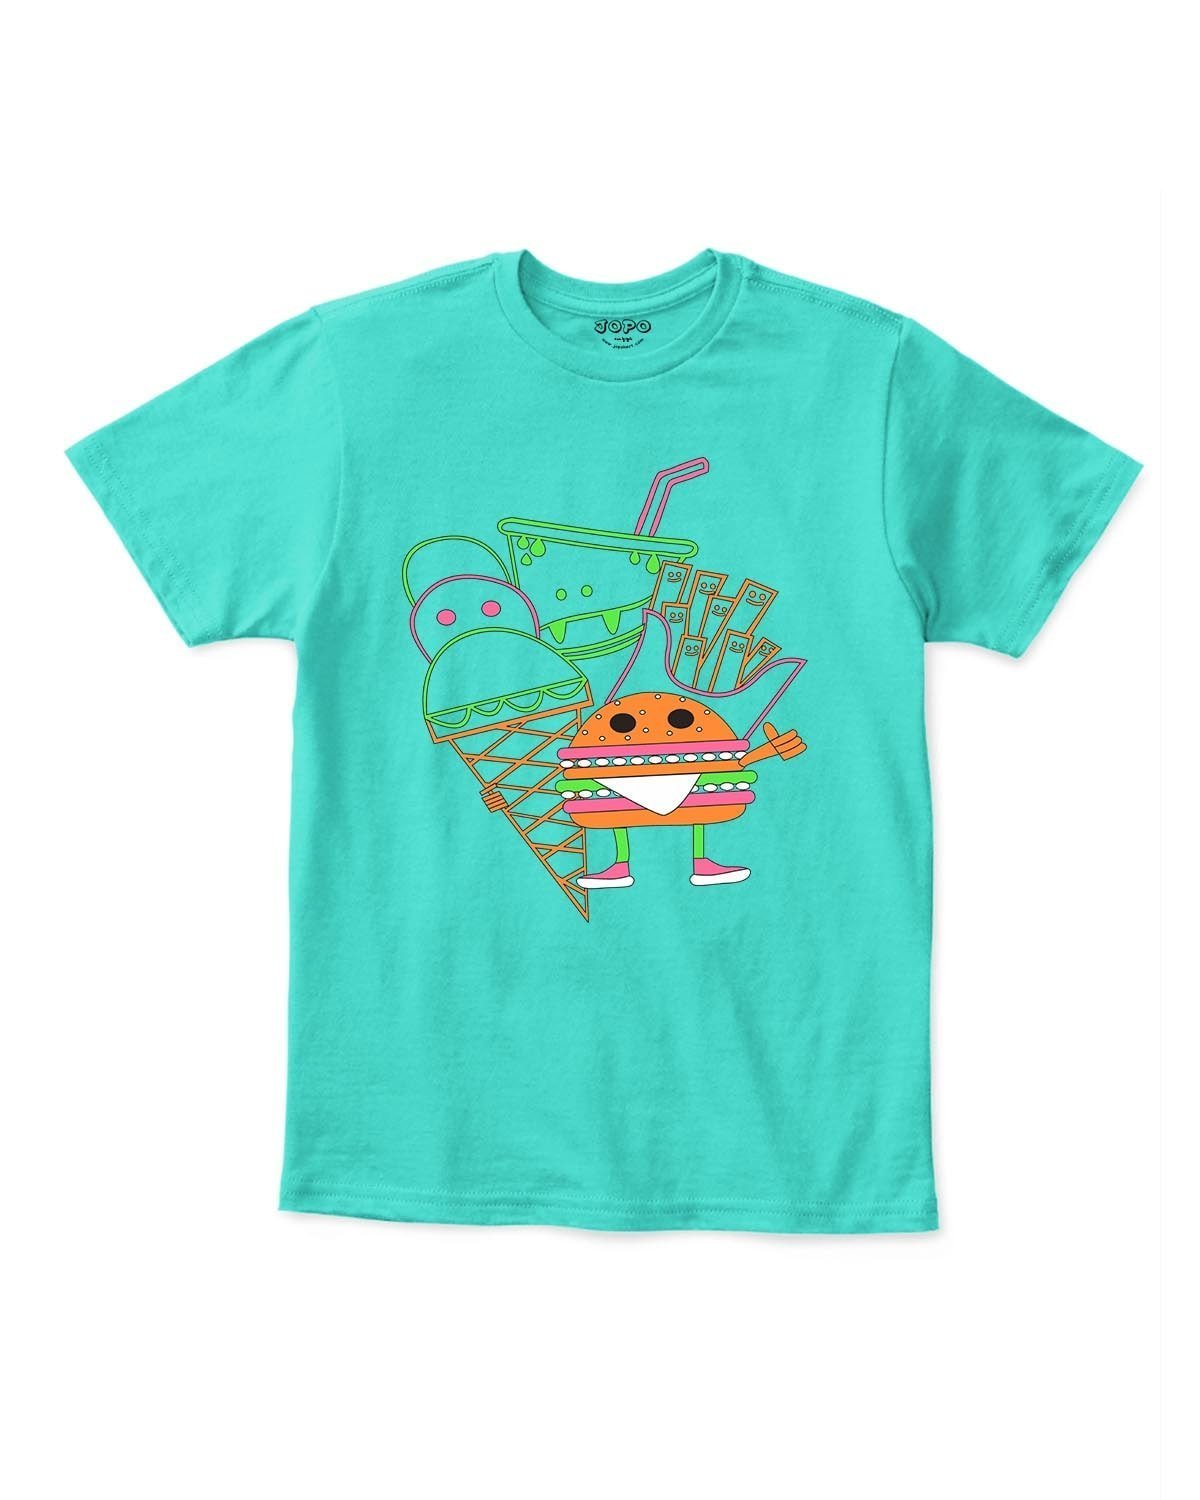 Burger Printed Kids TShirts